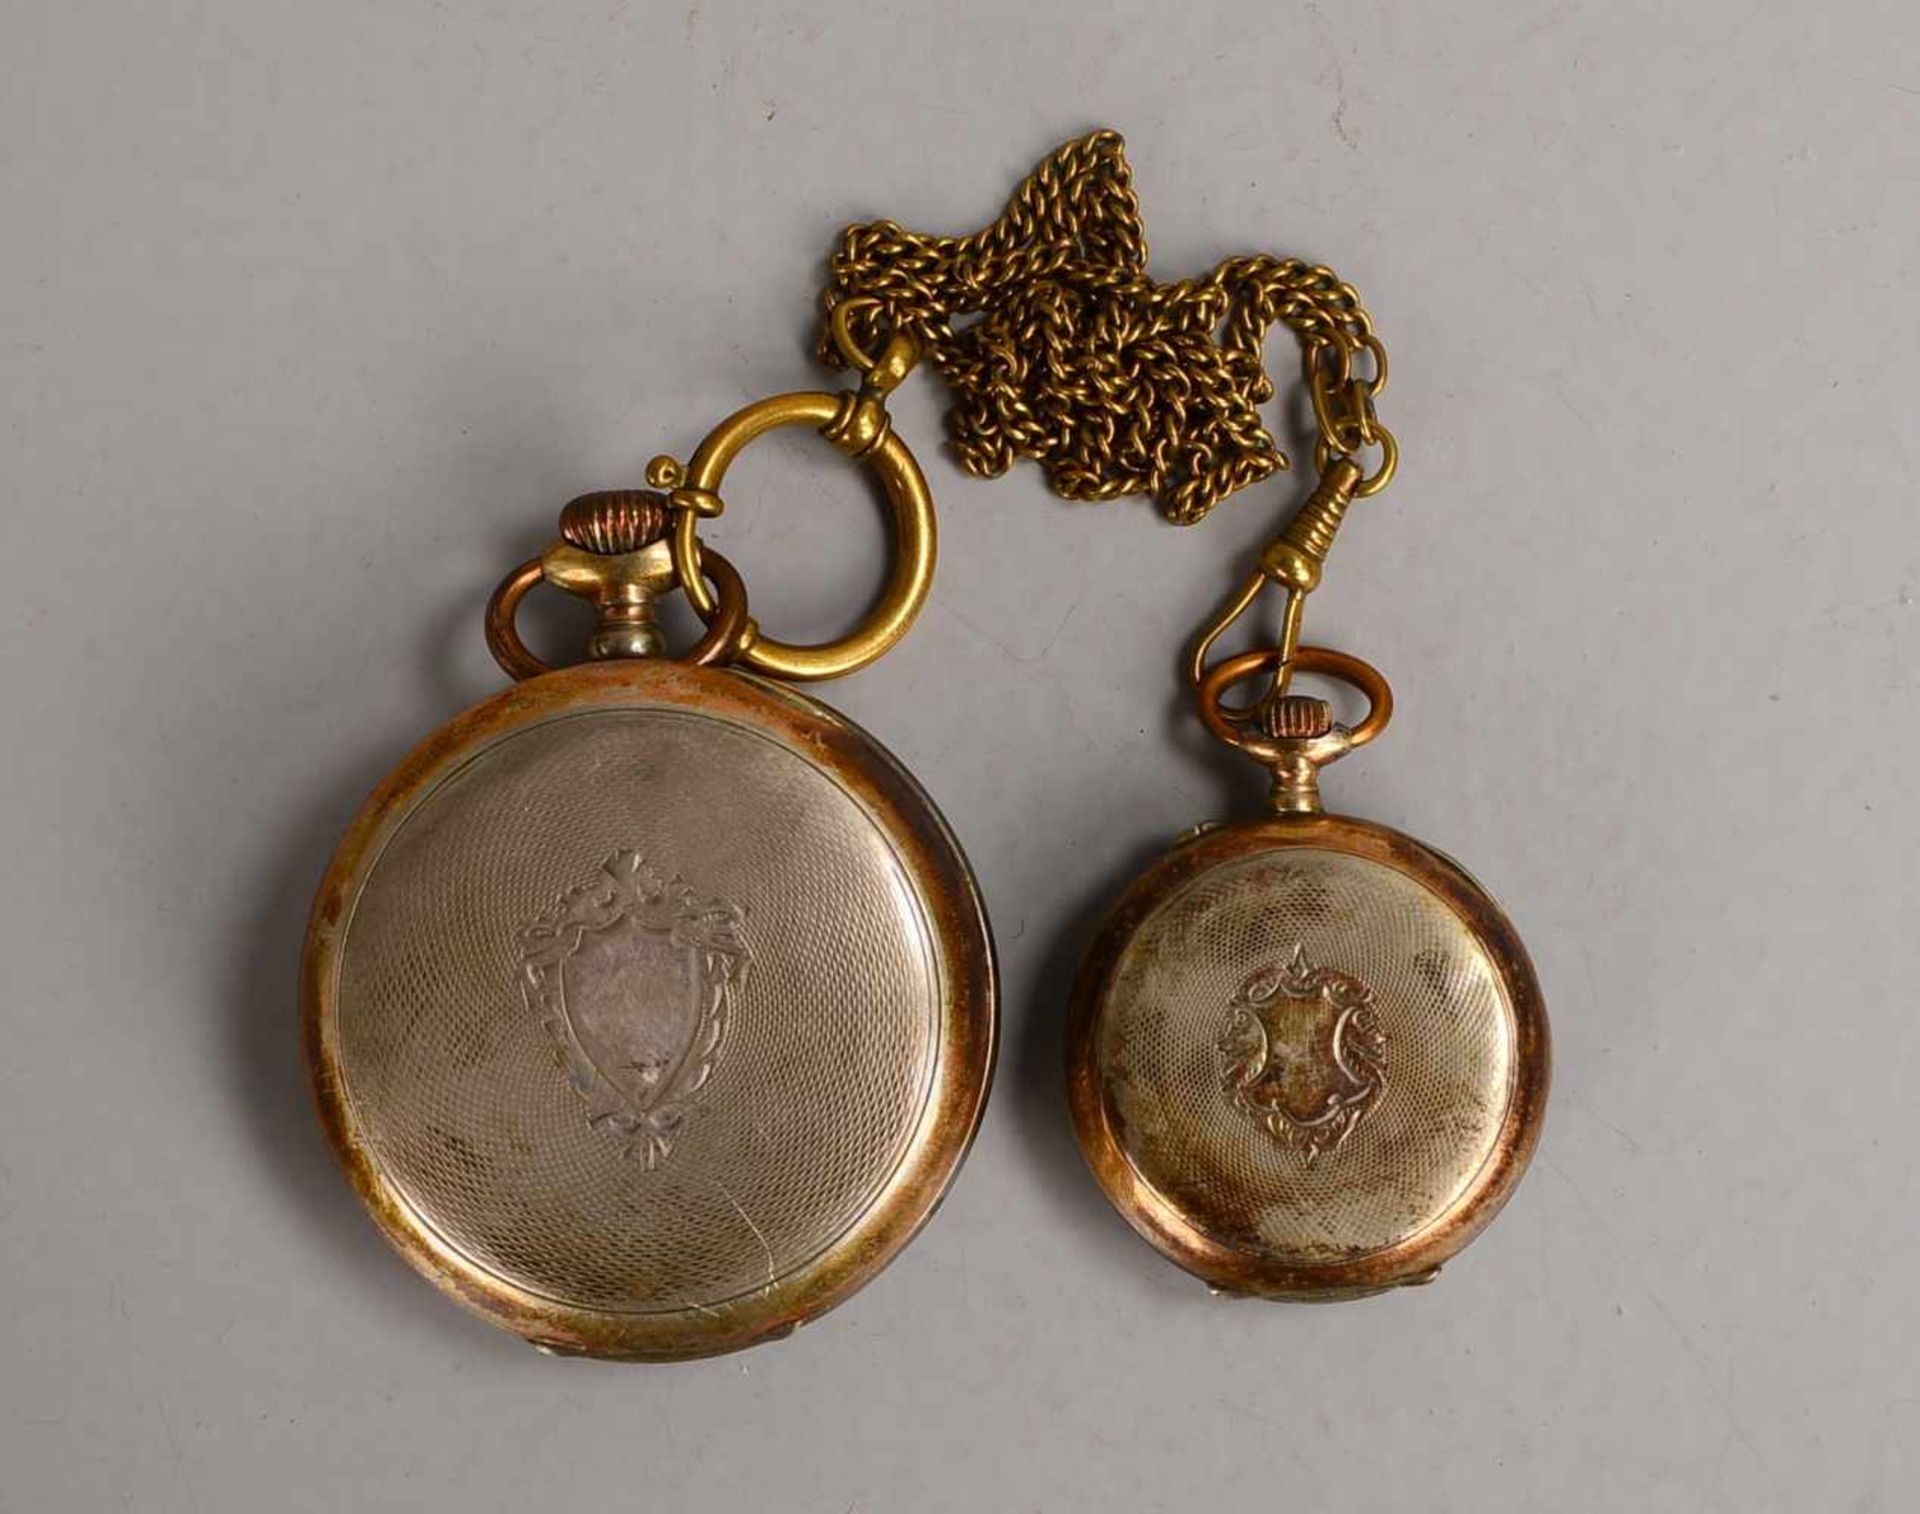 2 Taschenuhren, 800 Silber: 1x Arctos, mit Sekundenanzeige auf der '6', Durchmesser Gehäuse Ø 5 - Bild 3 aus 3